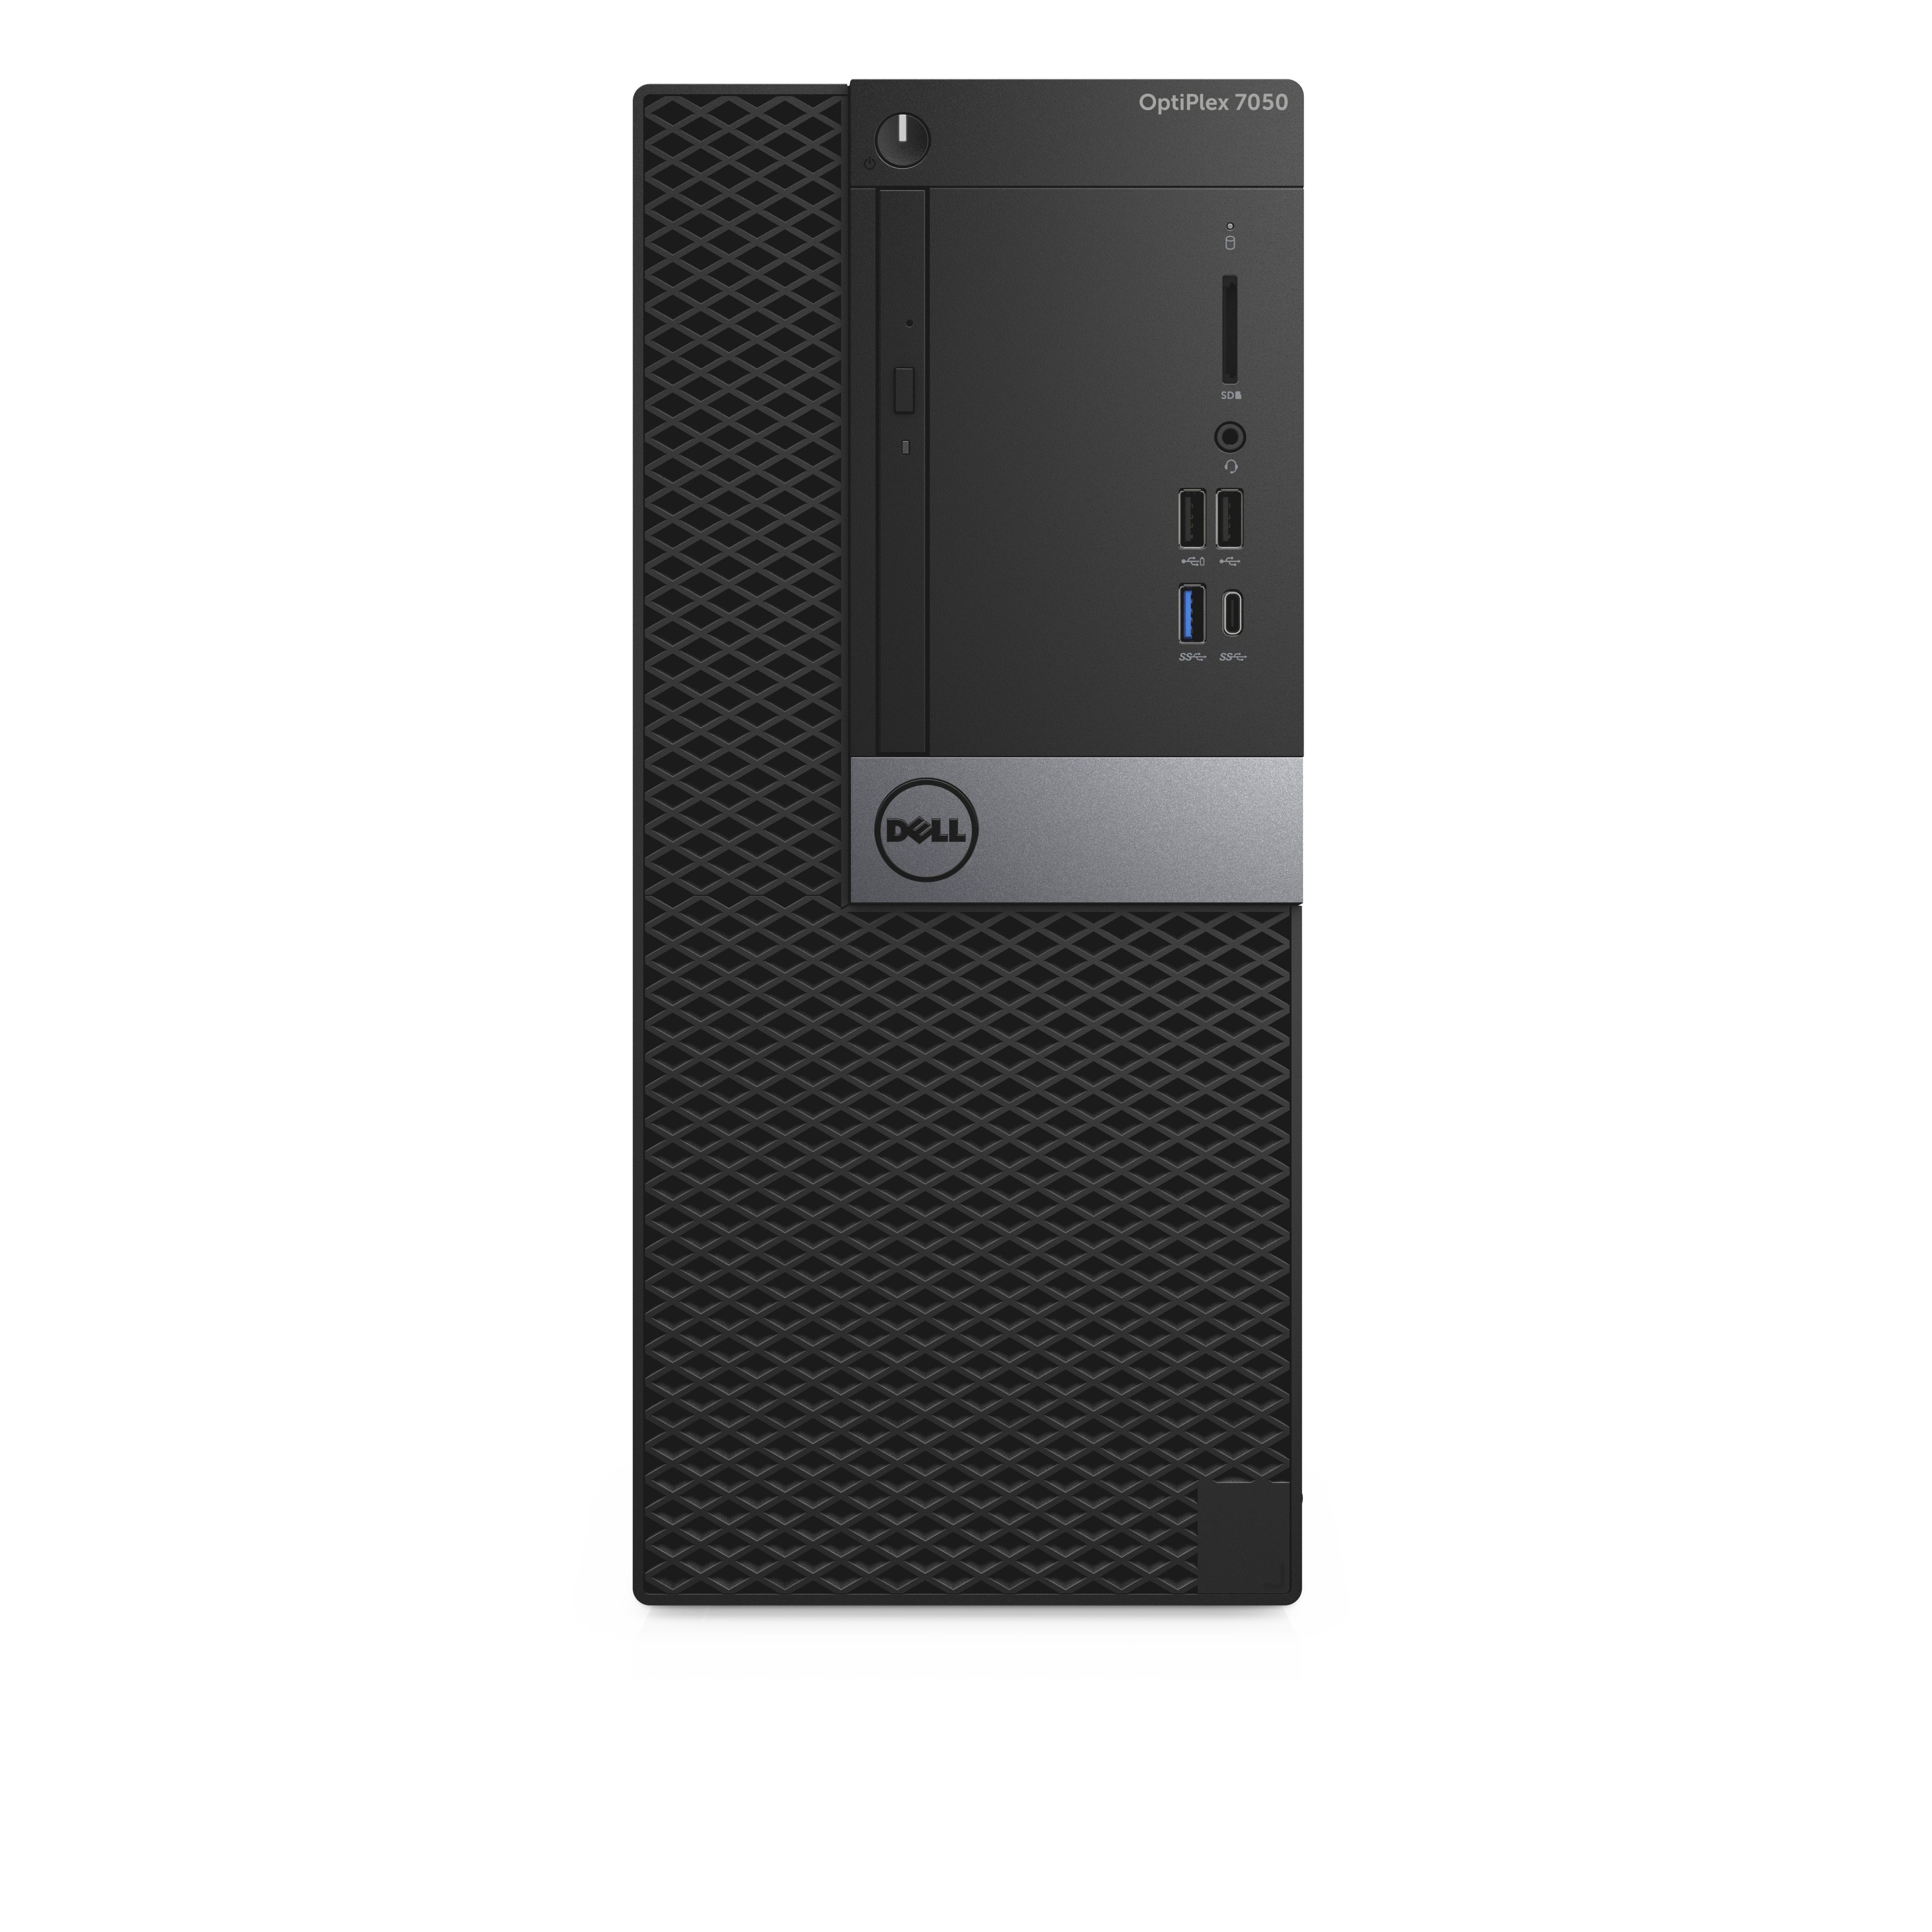 Dell Refurbished Dell Optiplex 7050 Intel Core i5-7600 X4 3.5GHz 8GB 256GB SSD Win10, Black (Certified Refurbished)